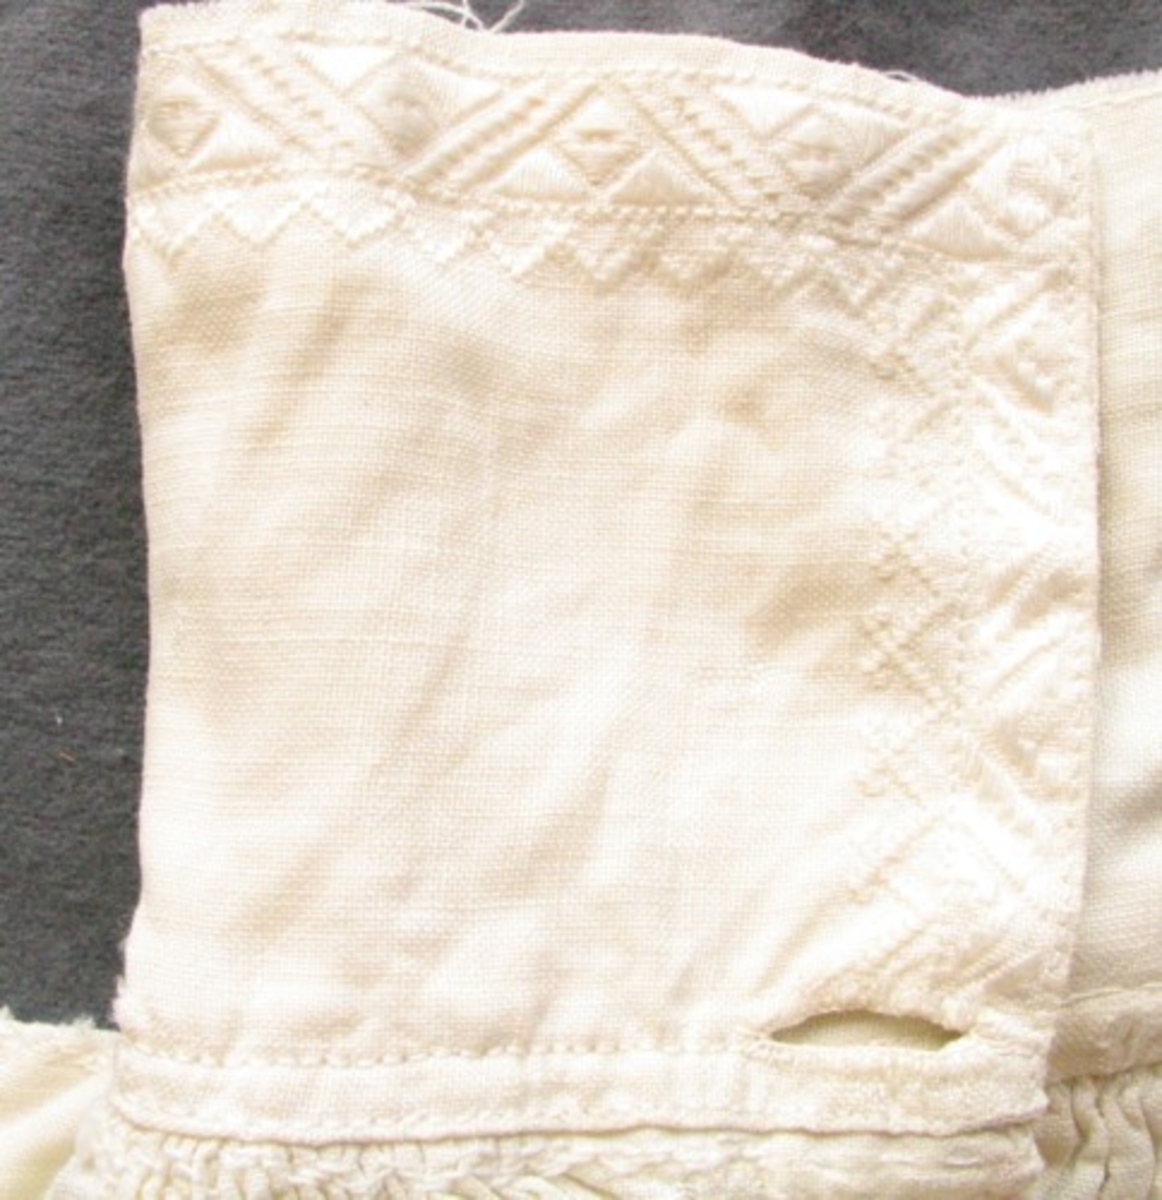 Äldre mansskjorta i handvävt linne, förmodligen brudgumsskjorta med broderat hjärta (80 X 85 mm, i korsstygn och stjälkstygn) under sprundet framtill (215 mm djupt, kantat med rosa broderier) och med märkningen "OSSMID" (9 X 62 mm) i nu rosa bomullsgarn. Krage med broderi i vitt merceriserat bomullsgarn (90 mm), broderi som bård längs kragens kanter i rätlinjig plattsöm som sträcker sig ca 20 mm in på kragen. Förstärkt ok, broderi på oket från hals till axel, rynk fram och bak vid kragen, broderi för att förstärka rynktråden. Broderi vid ärmisättningen, ärmspjäll. Stripade rynkor vid manschetten (19 mm bred), broderi på manschetten både i vitt merceriserat bomullsgarn och rött bomullsgarn, två knapphål, förstärkta ärmsprund (tyget invikt i en trekantsform). Sprund nertill i sidsömmarna (86 mm).